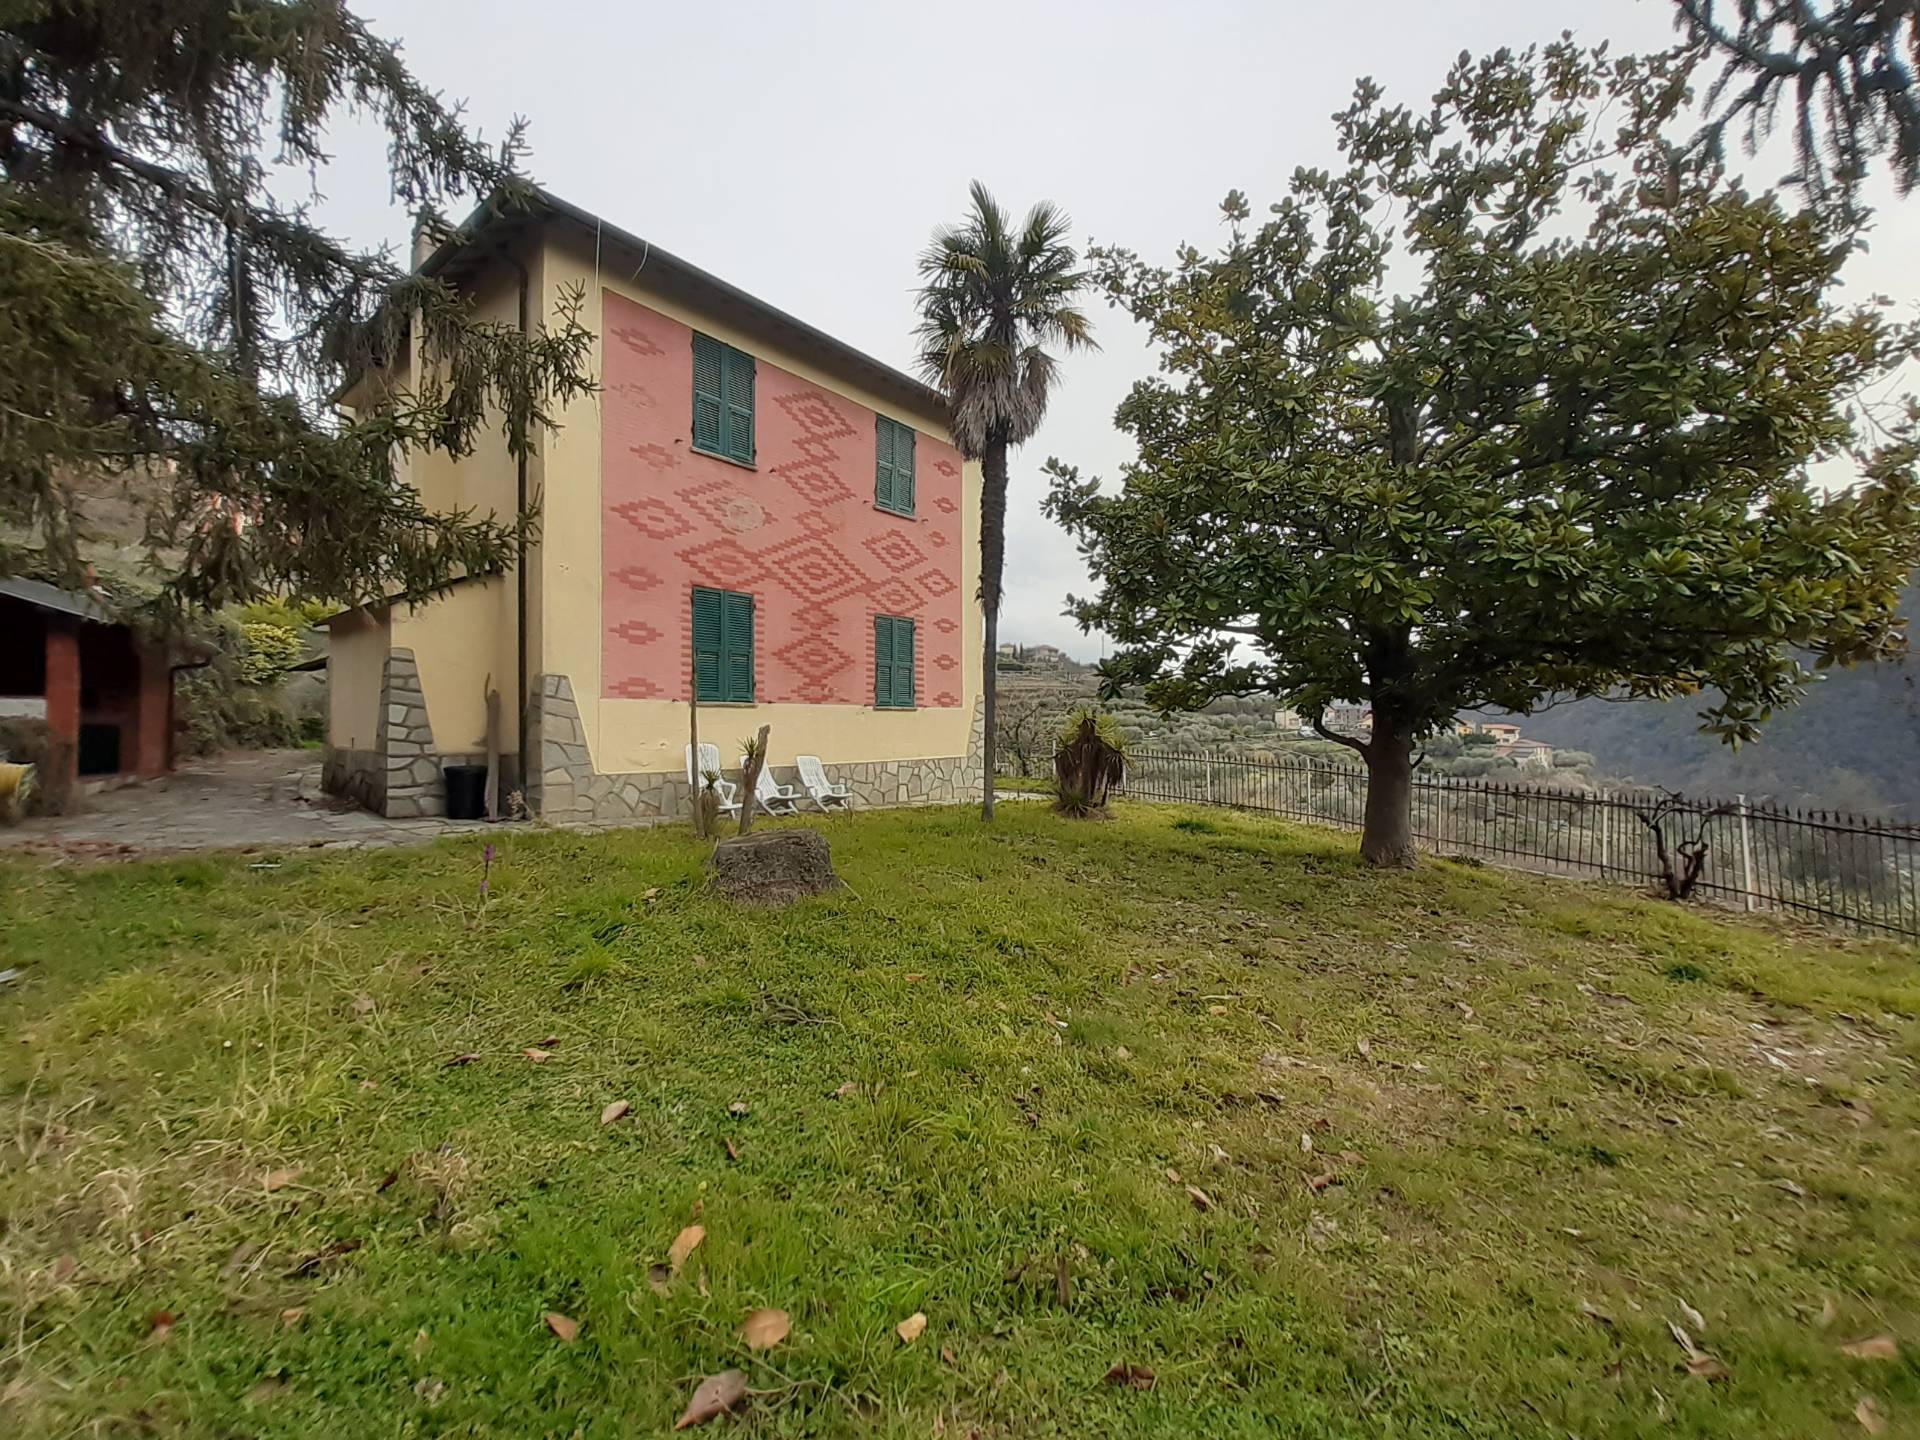 Villa in vendita a Ranzo, 8 locali, prezzo € 340.000 | PortaleAgenzieImmobiliari.it